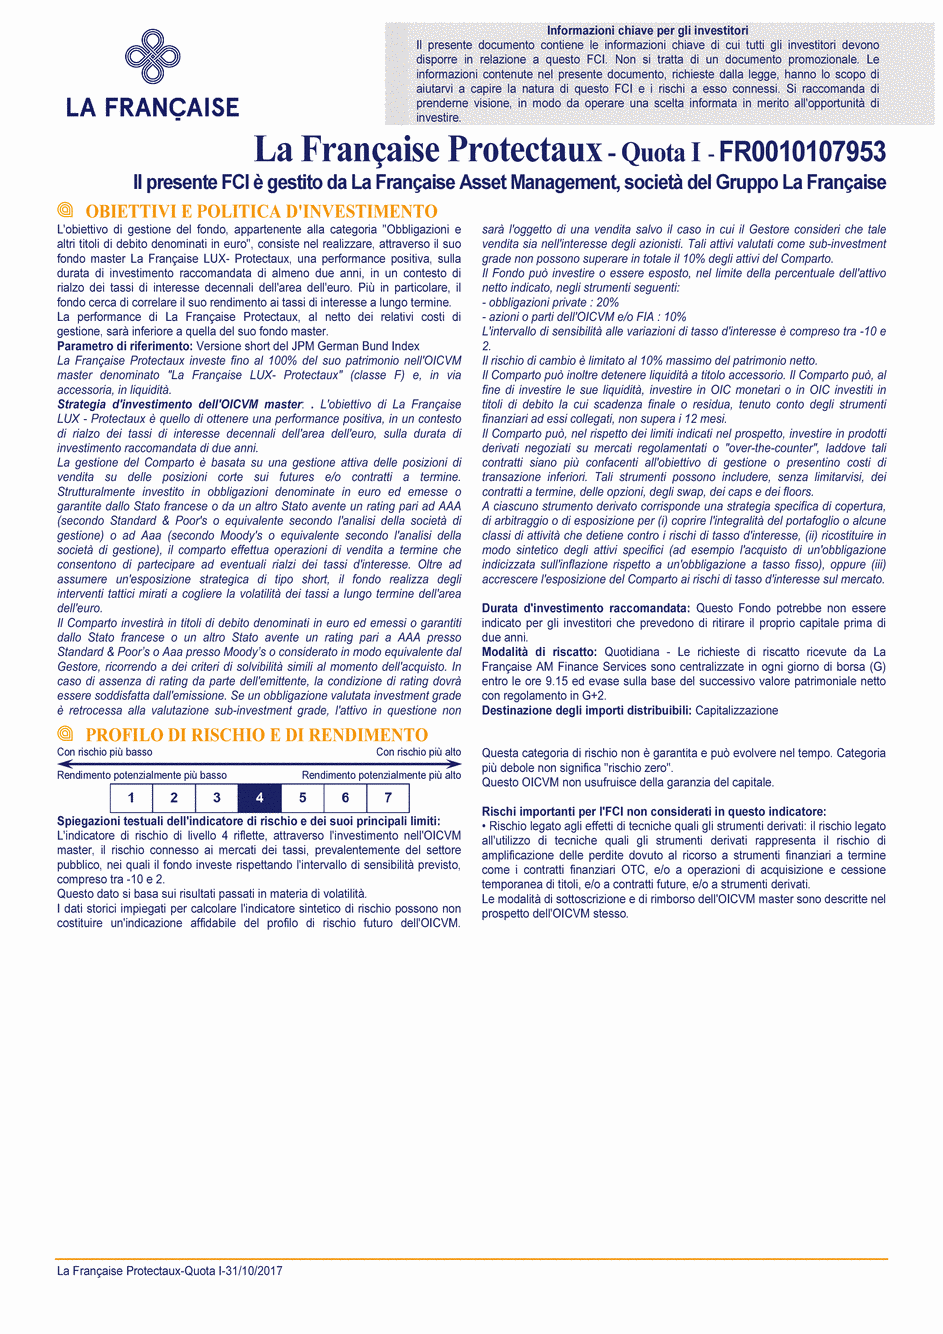 DICI La Française Protectaux - Part I - 31/10/2017 - Italien